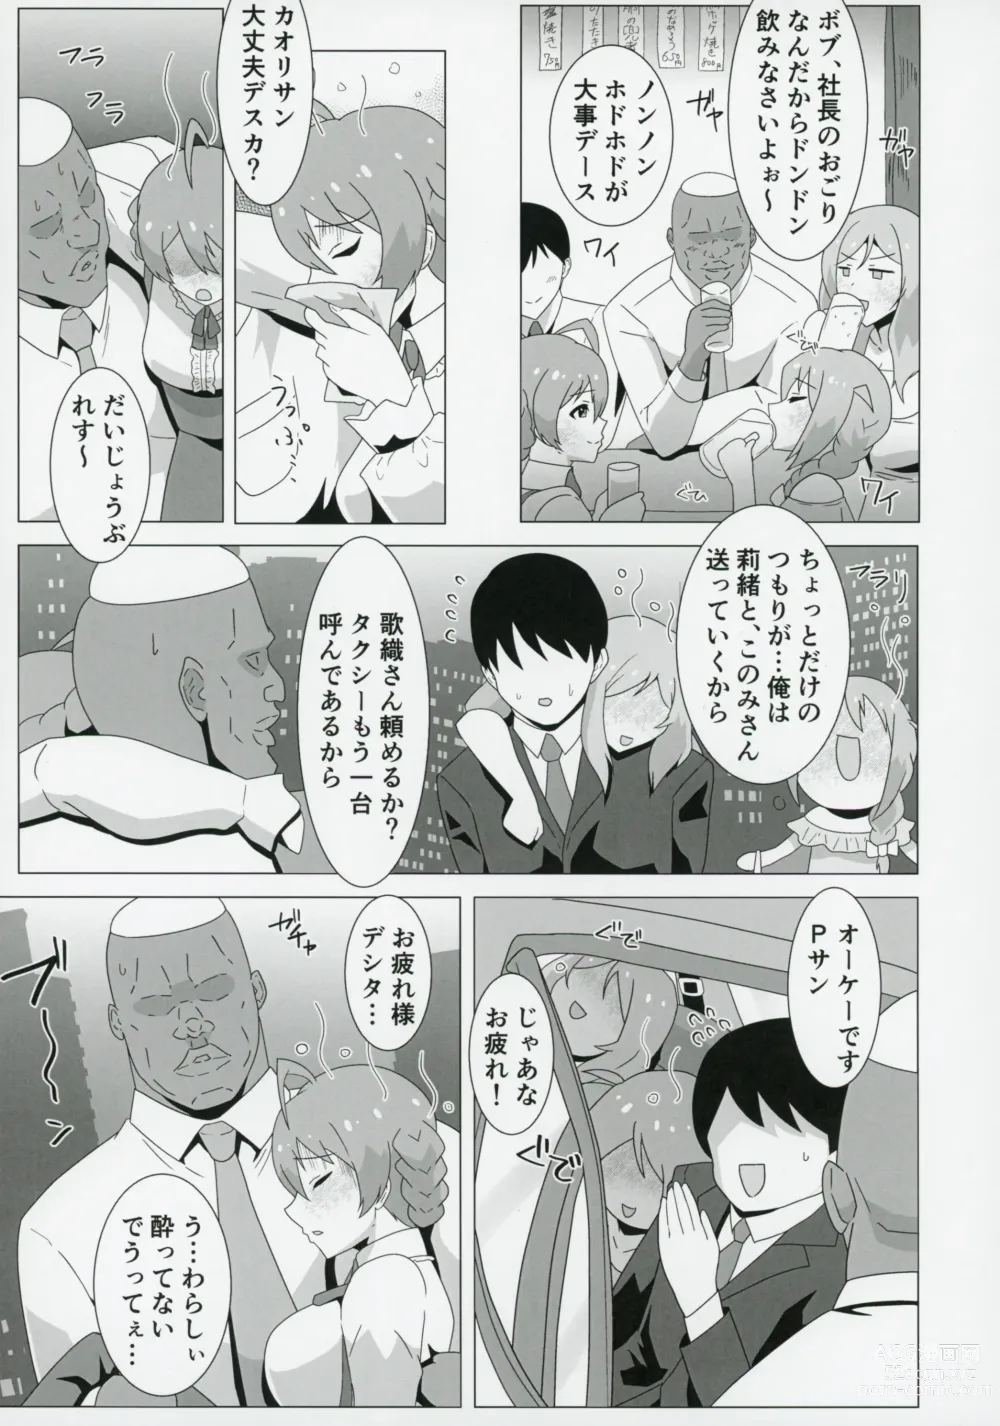 Page 6 of doujinshi Kaori,Kokujin Macho ni Kairakuochi,Netorare Sex de Kizamareta BBC.